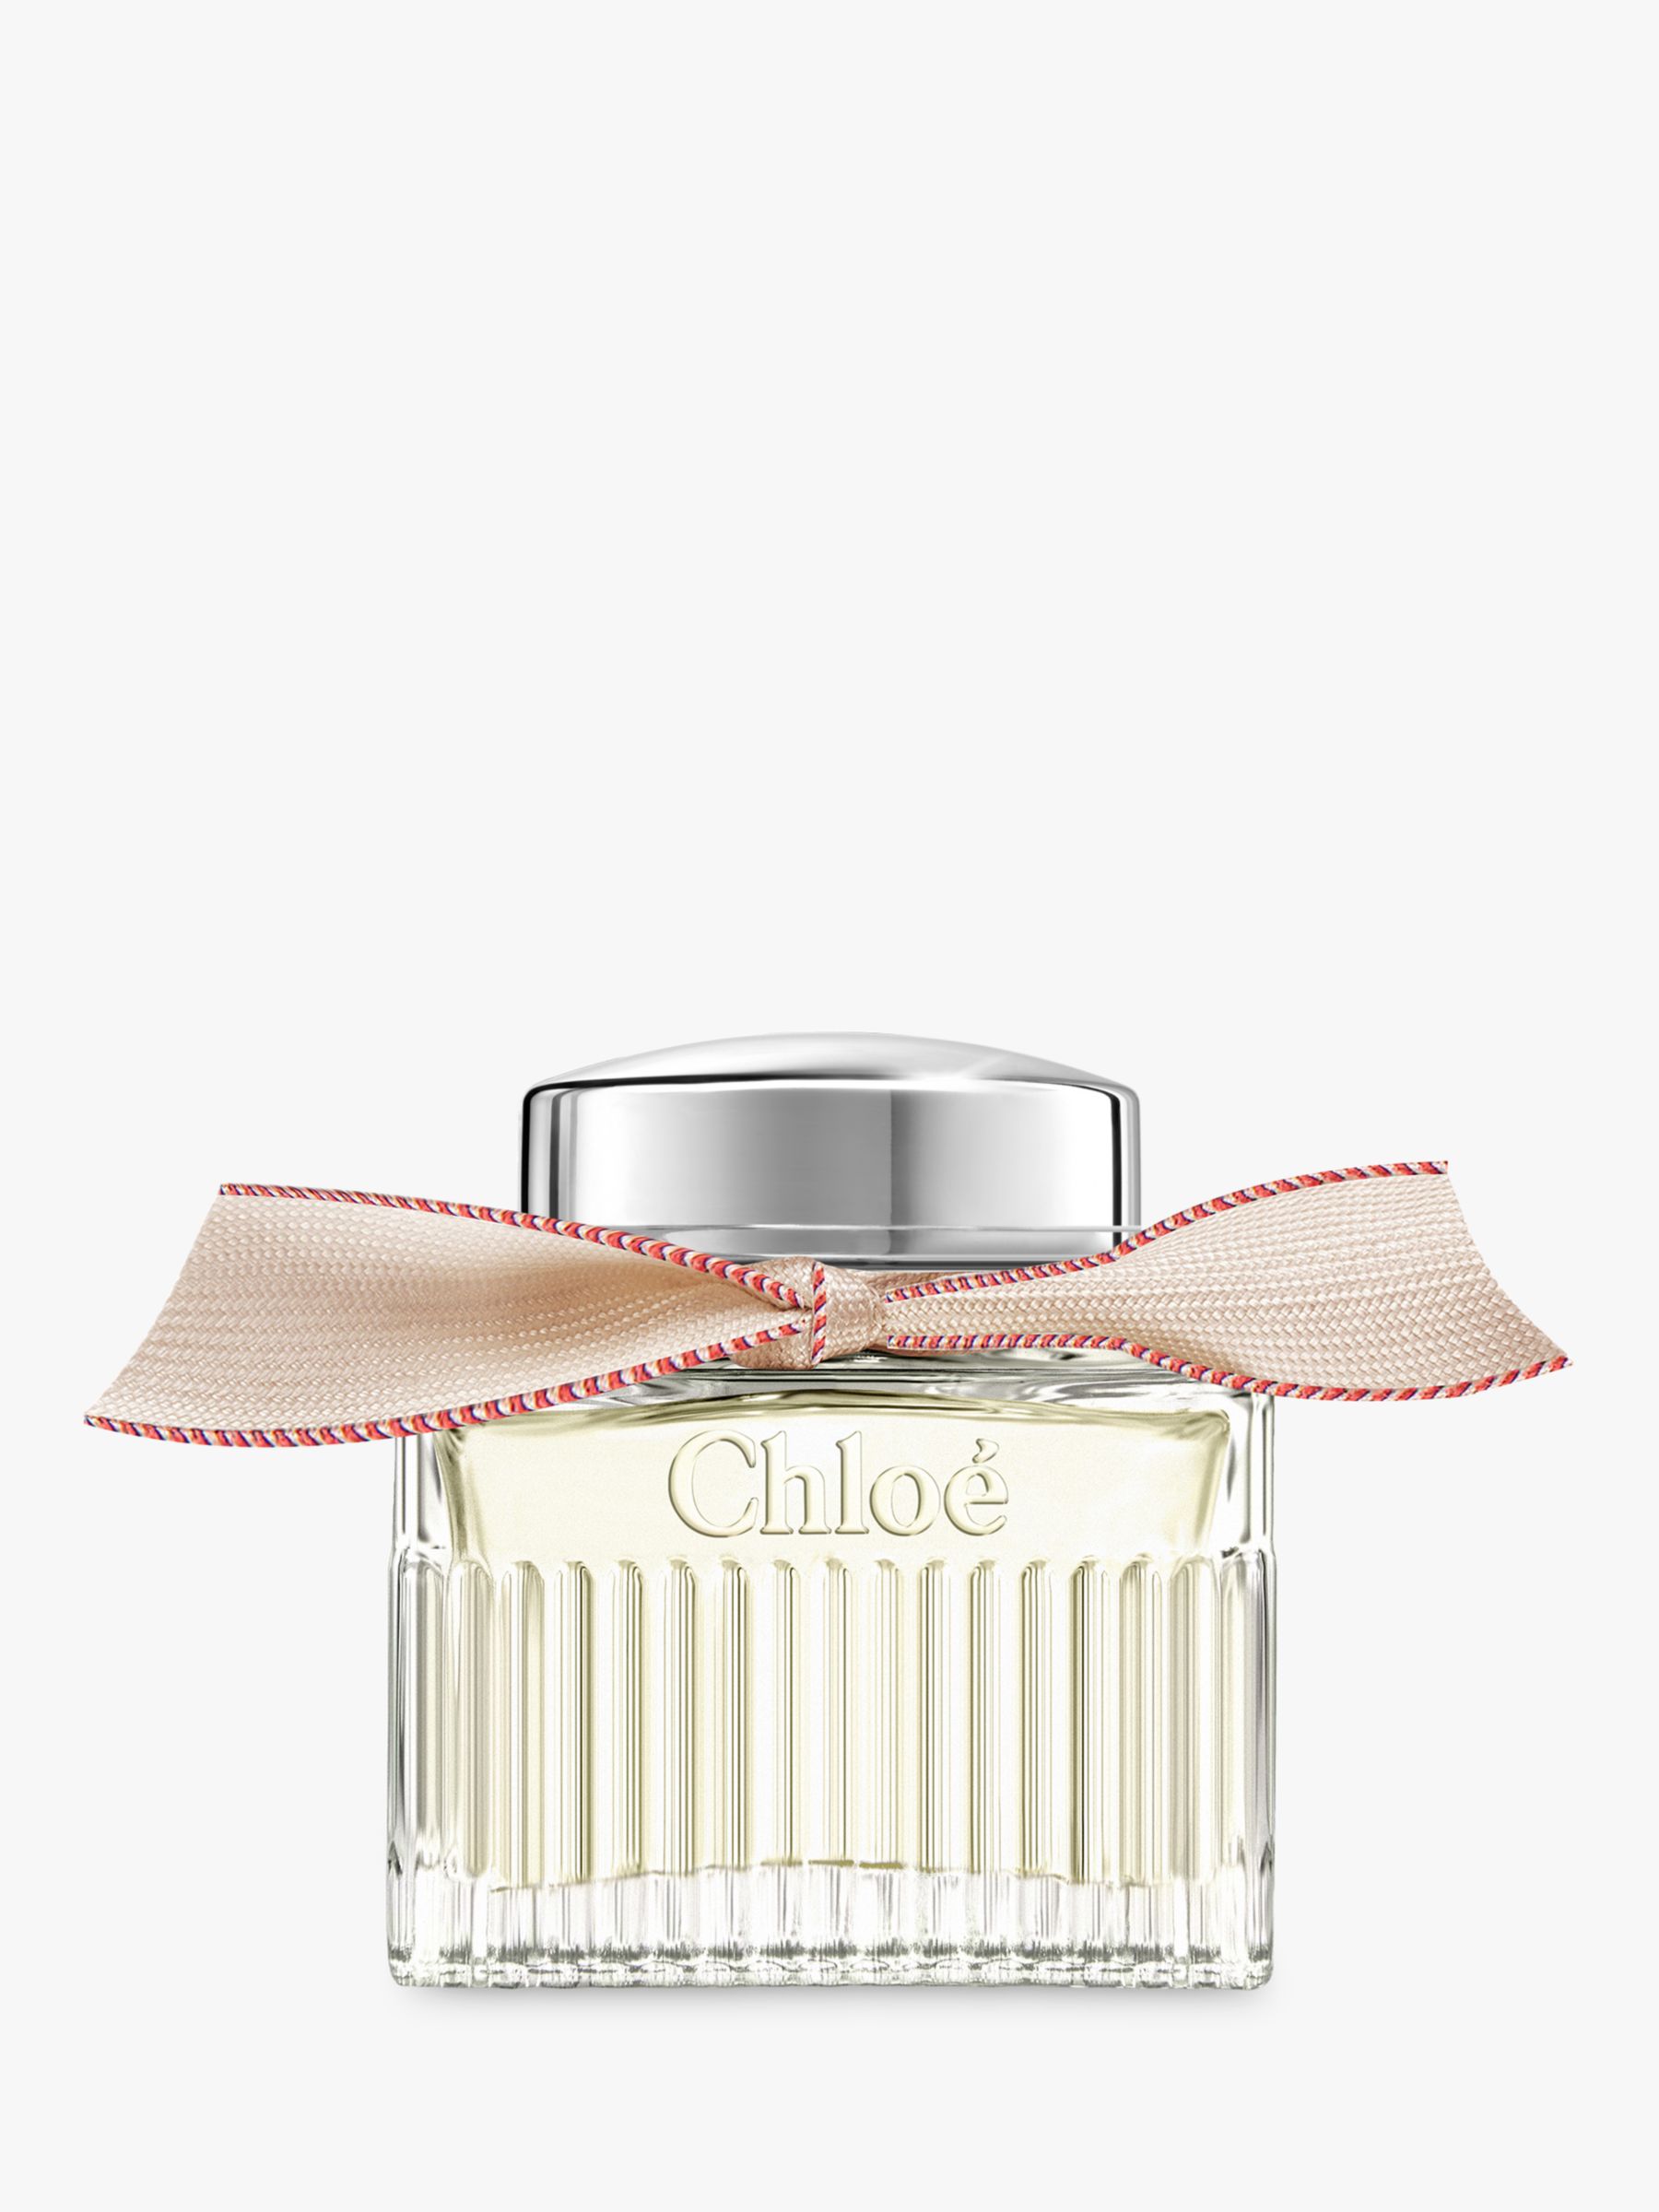 Chloé L’Eau de Parfum Lumineuse for Women, 50ml 1